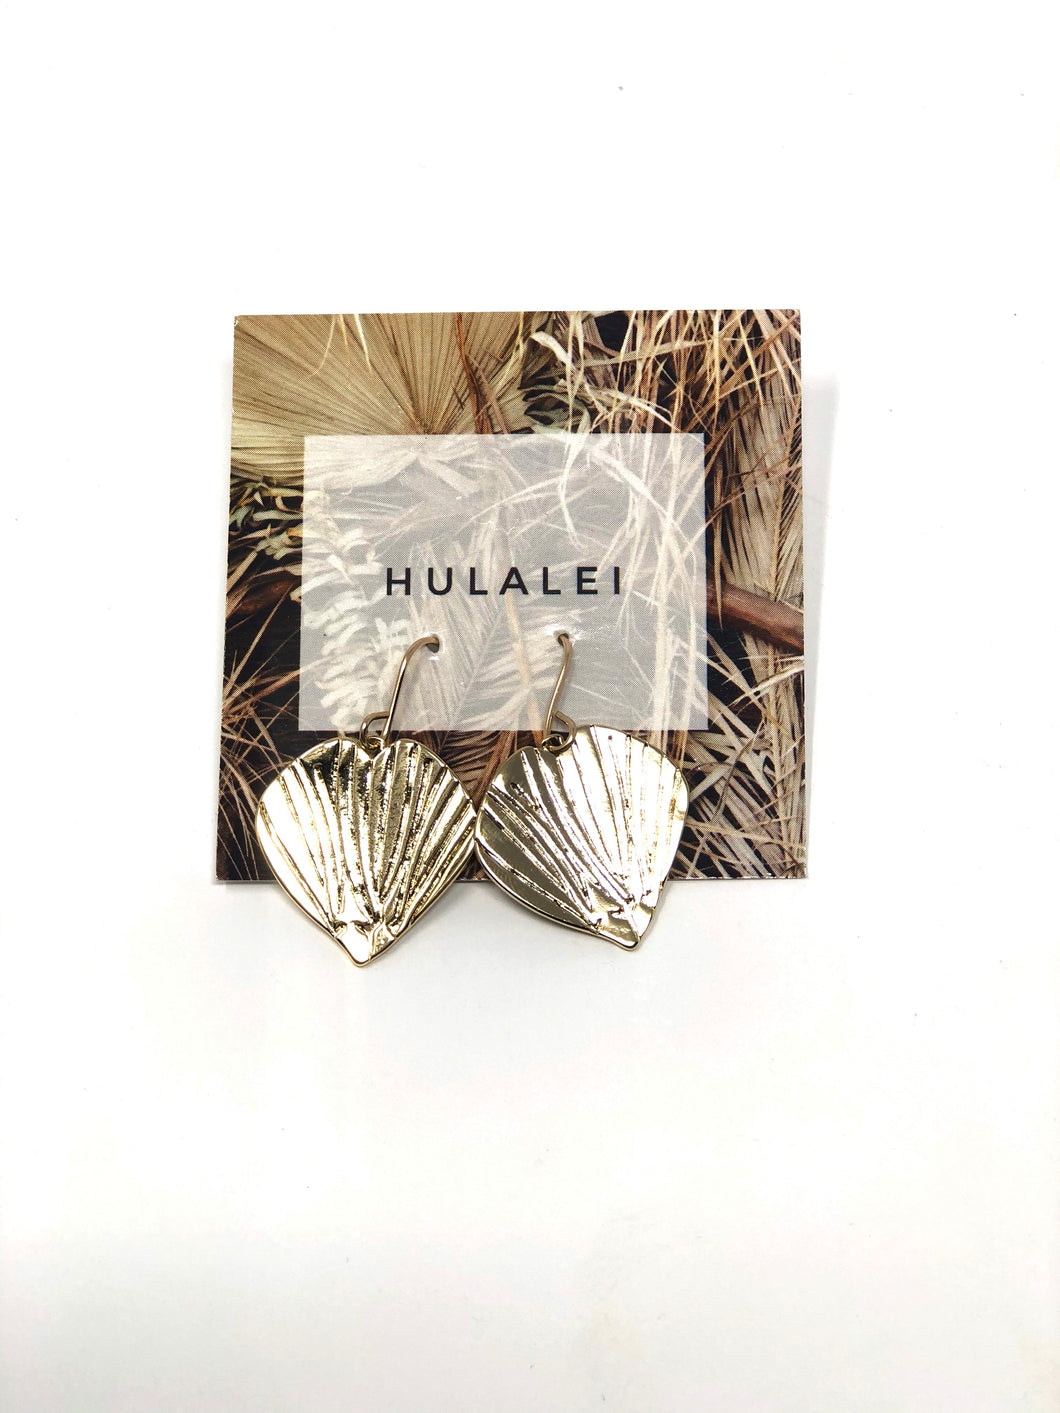 Hulalei logo